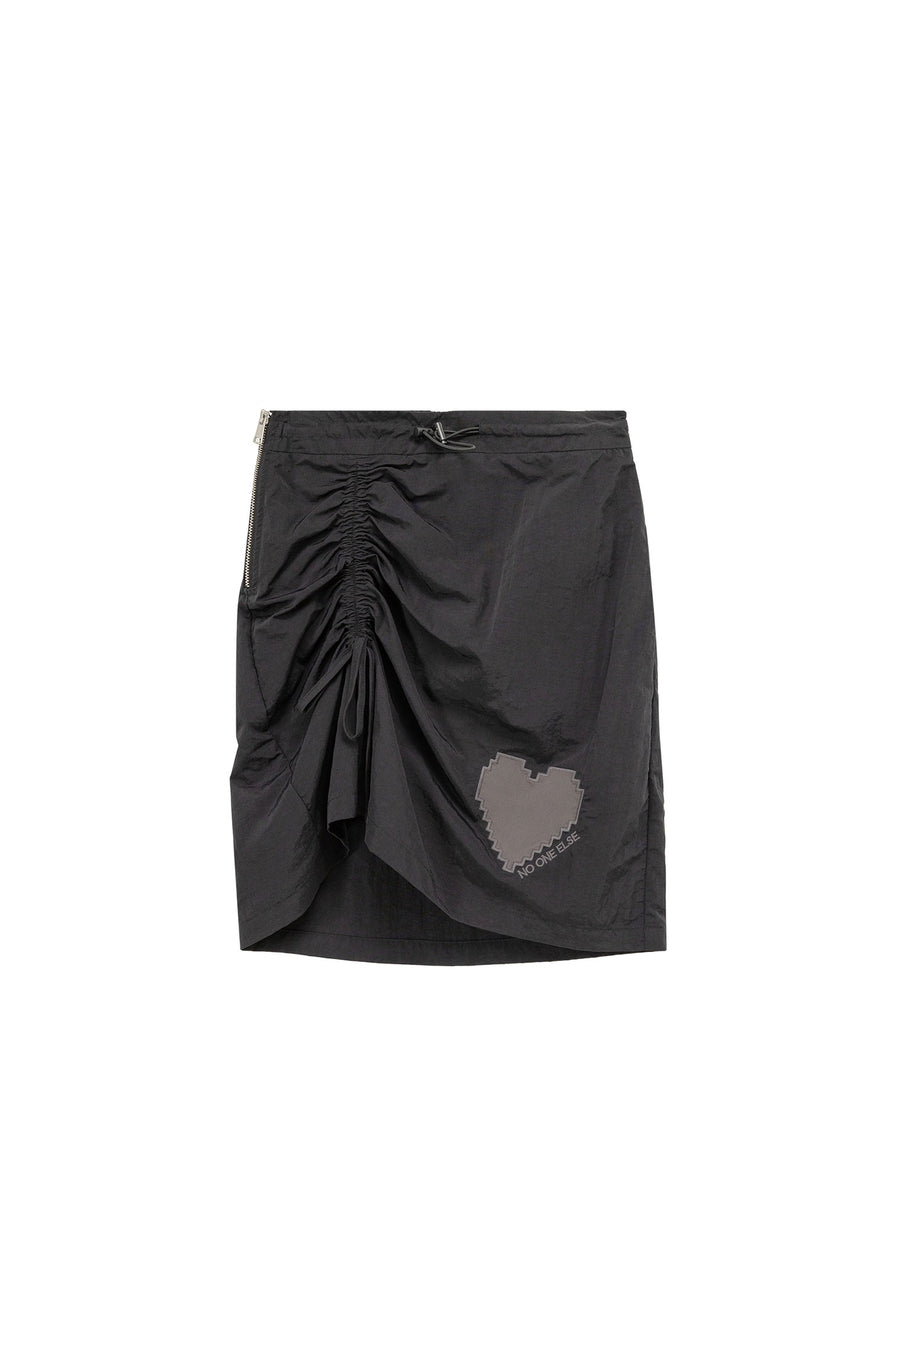 CHUU High Waist Side String Heart Skirt